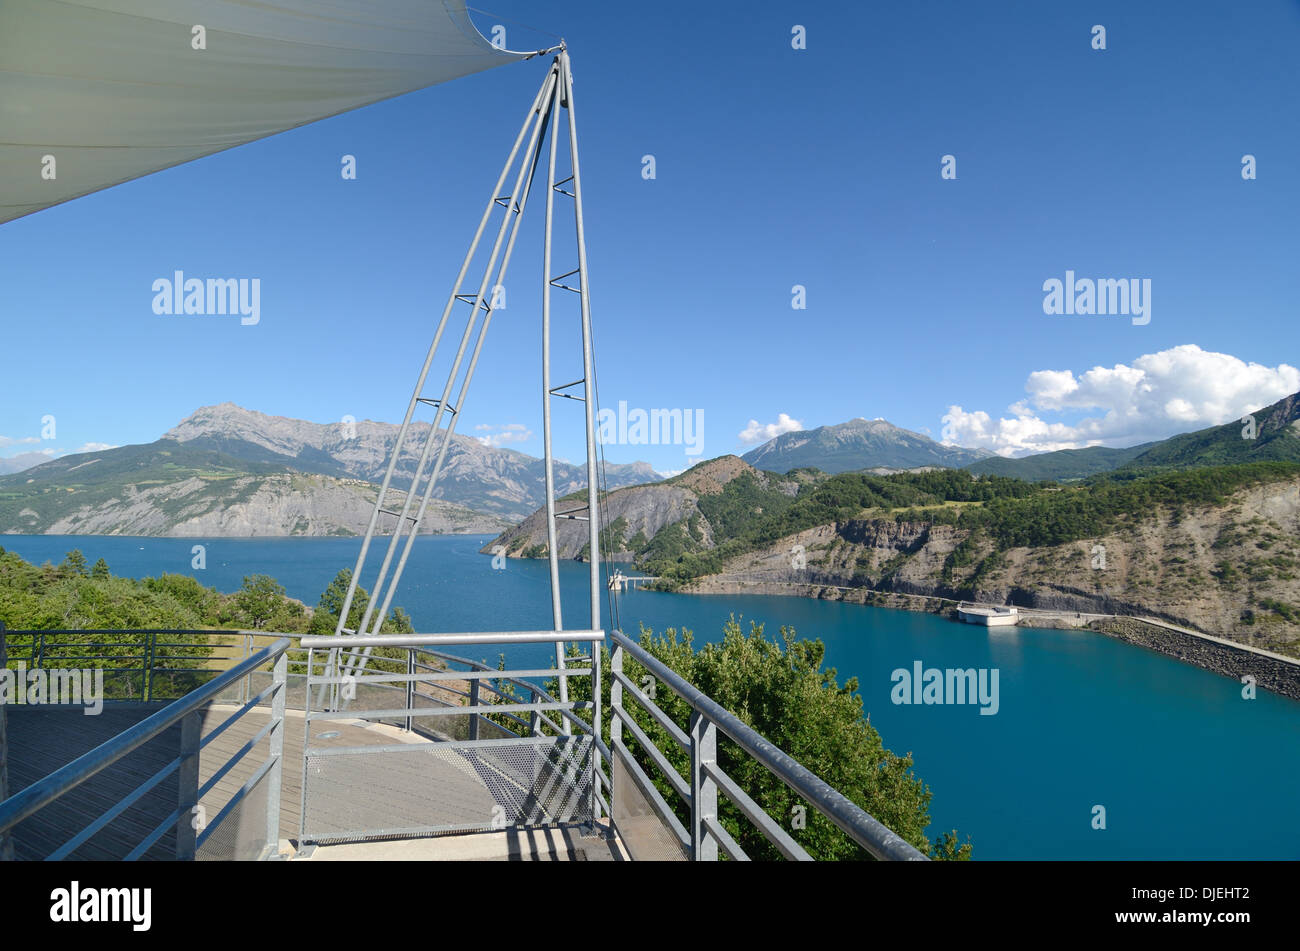 Plataforma de observación Con Vistas al lago Lac de Serre-Ponçon o al lago Serre Poncon o presa de presa y presa Hautes-Alpes o Altos Alpes Francia Foto de stock